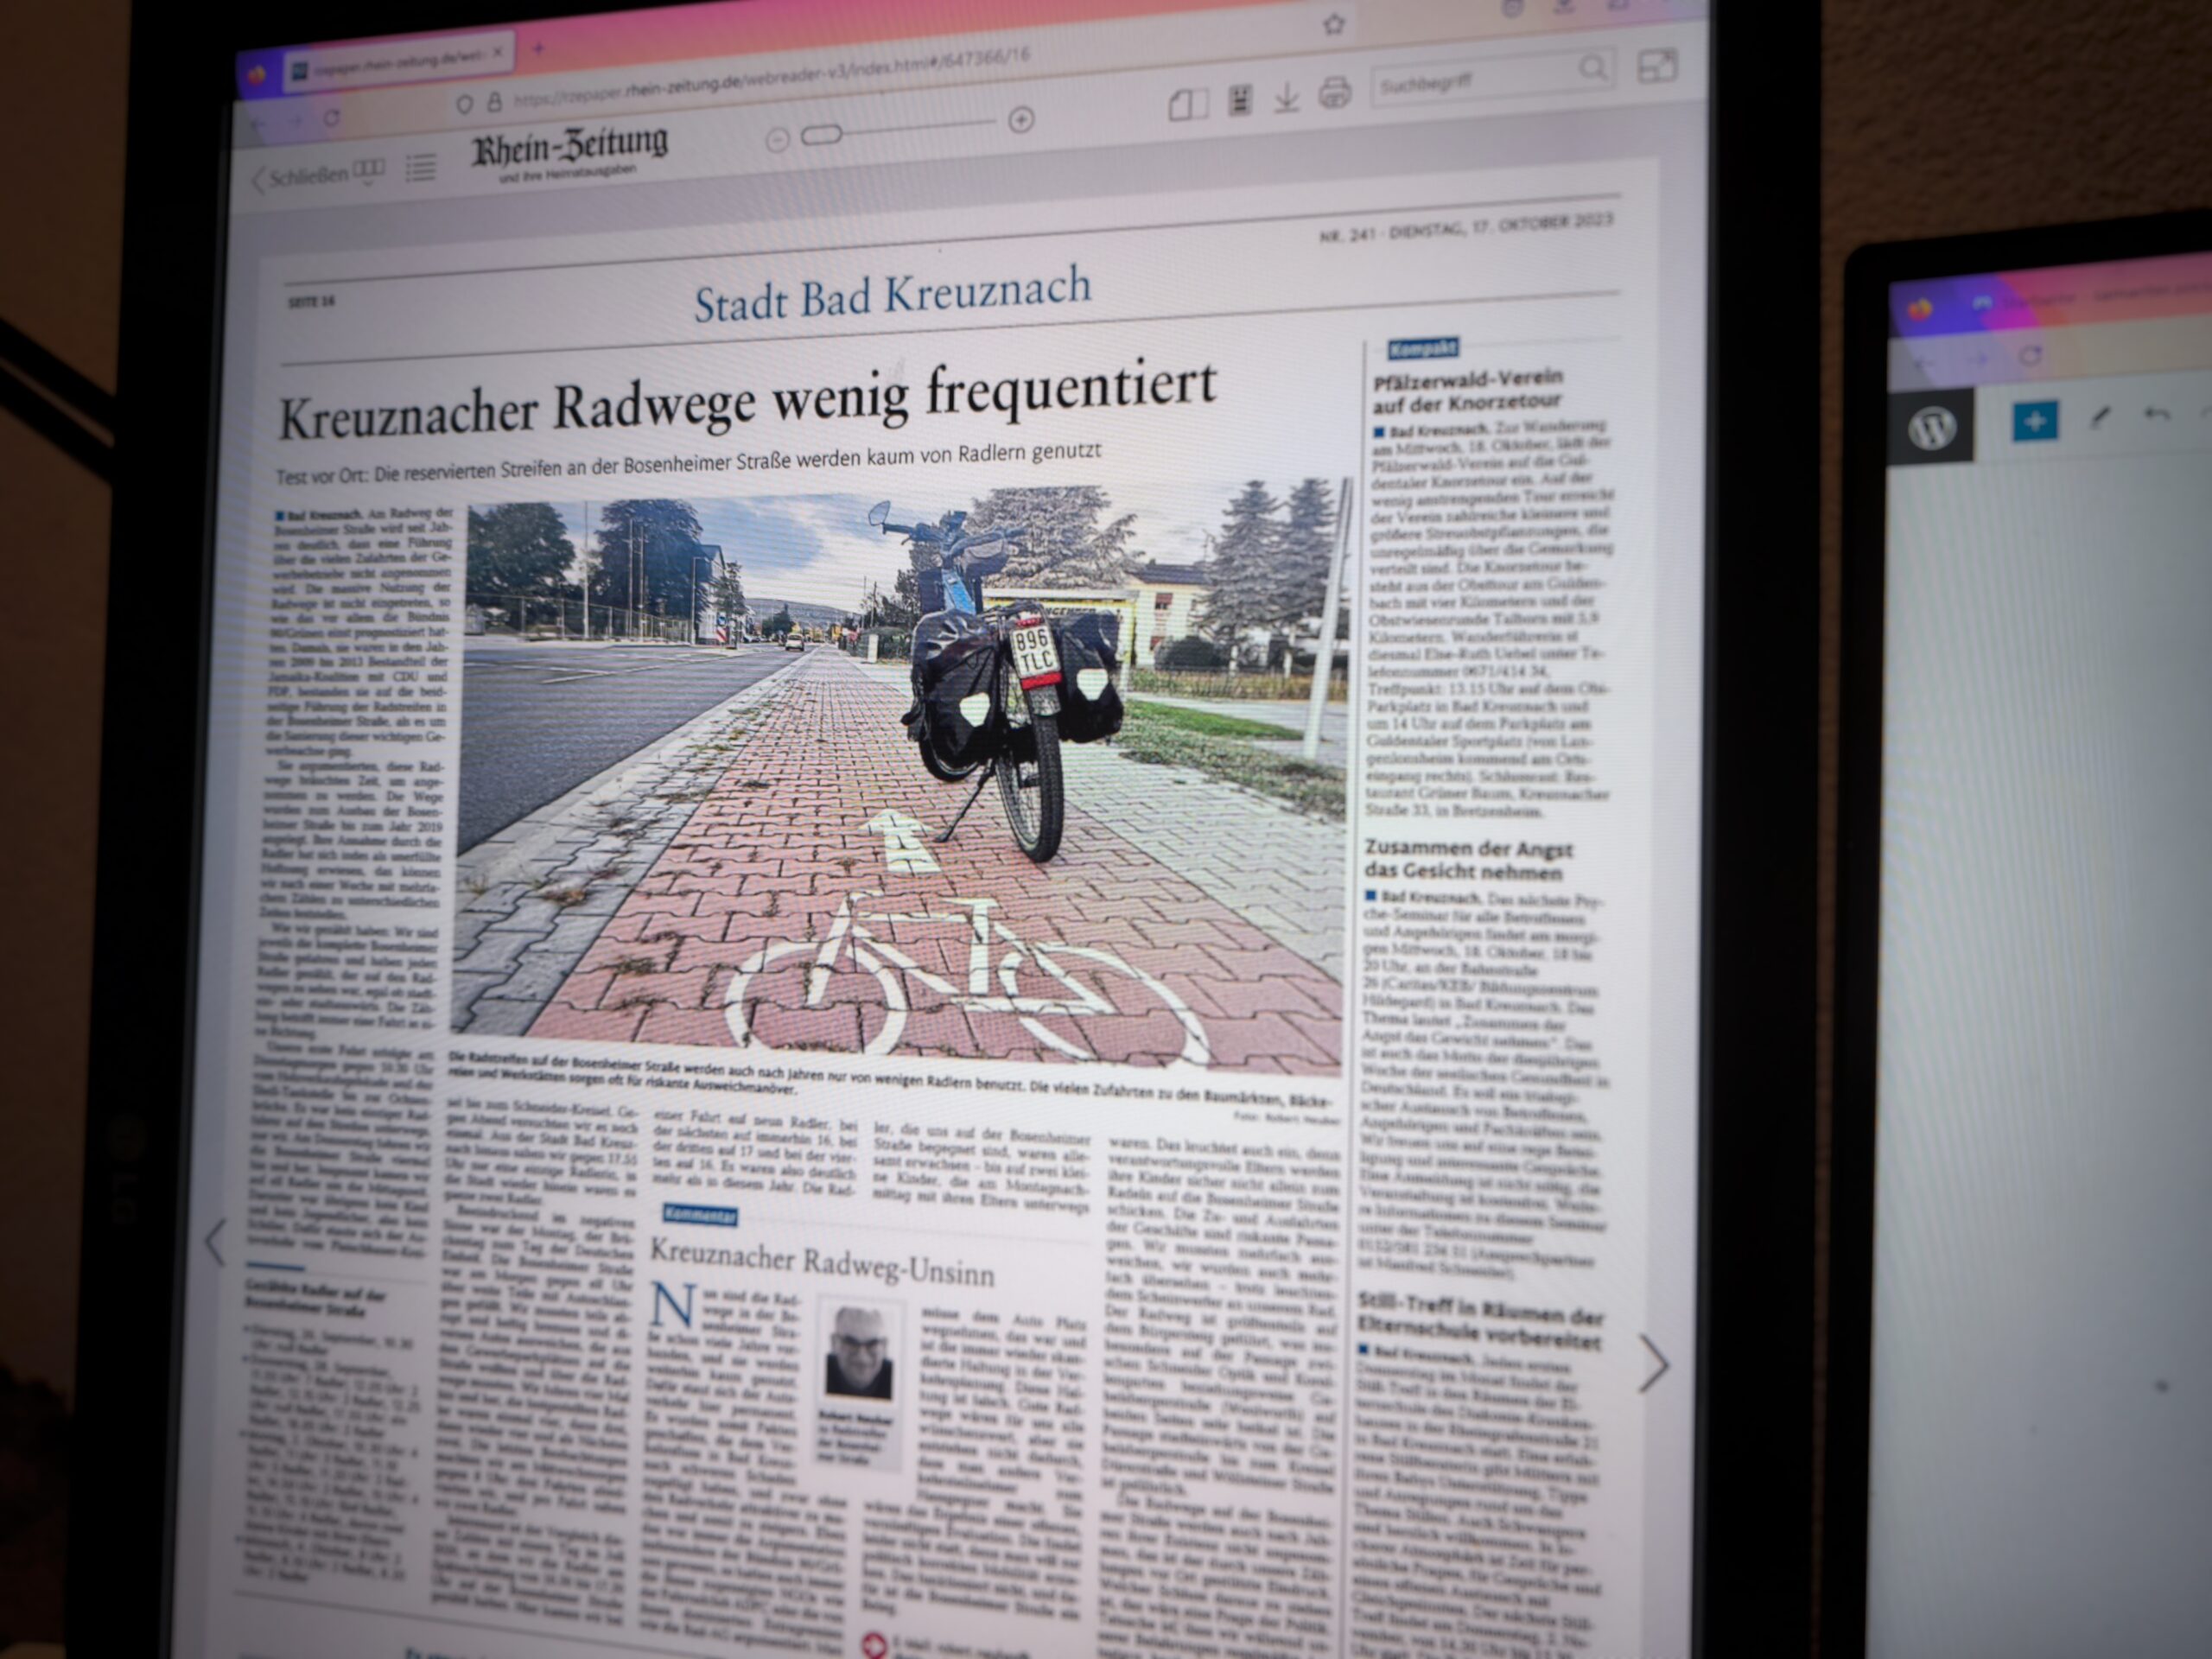 Überschrift in Zeitung: Kreuznacher Radwege wenig frequentiert